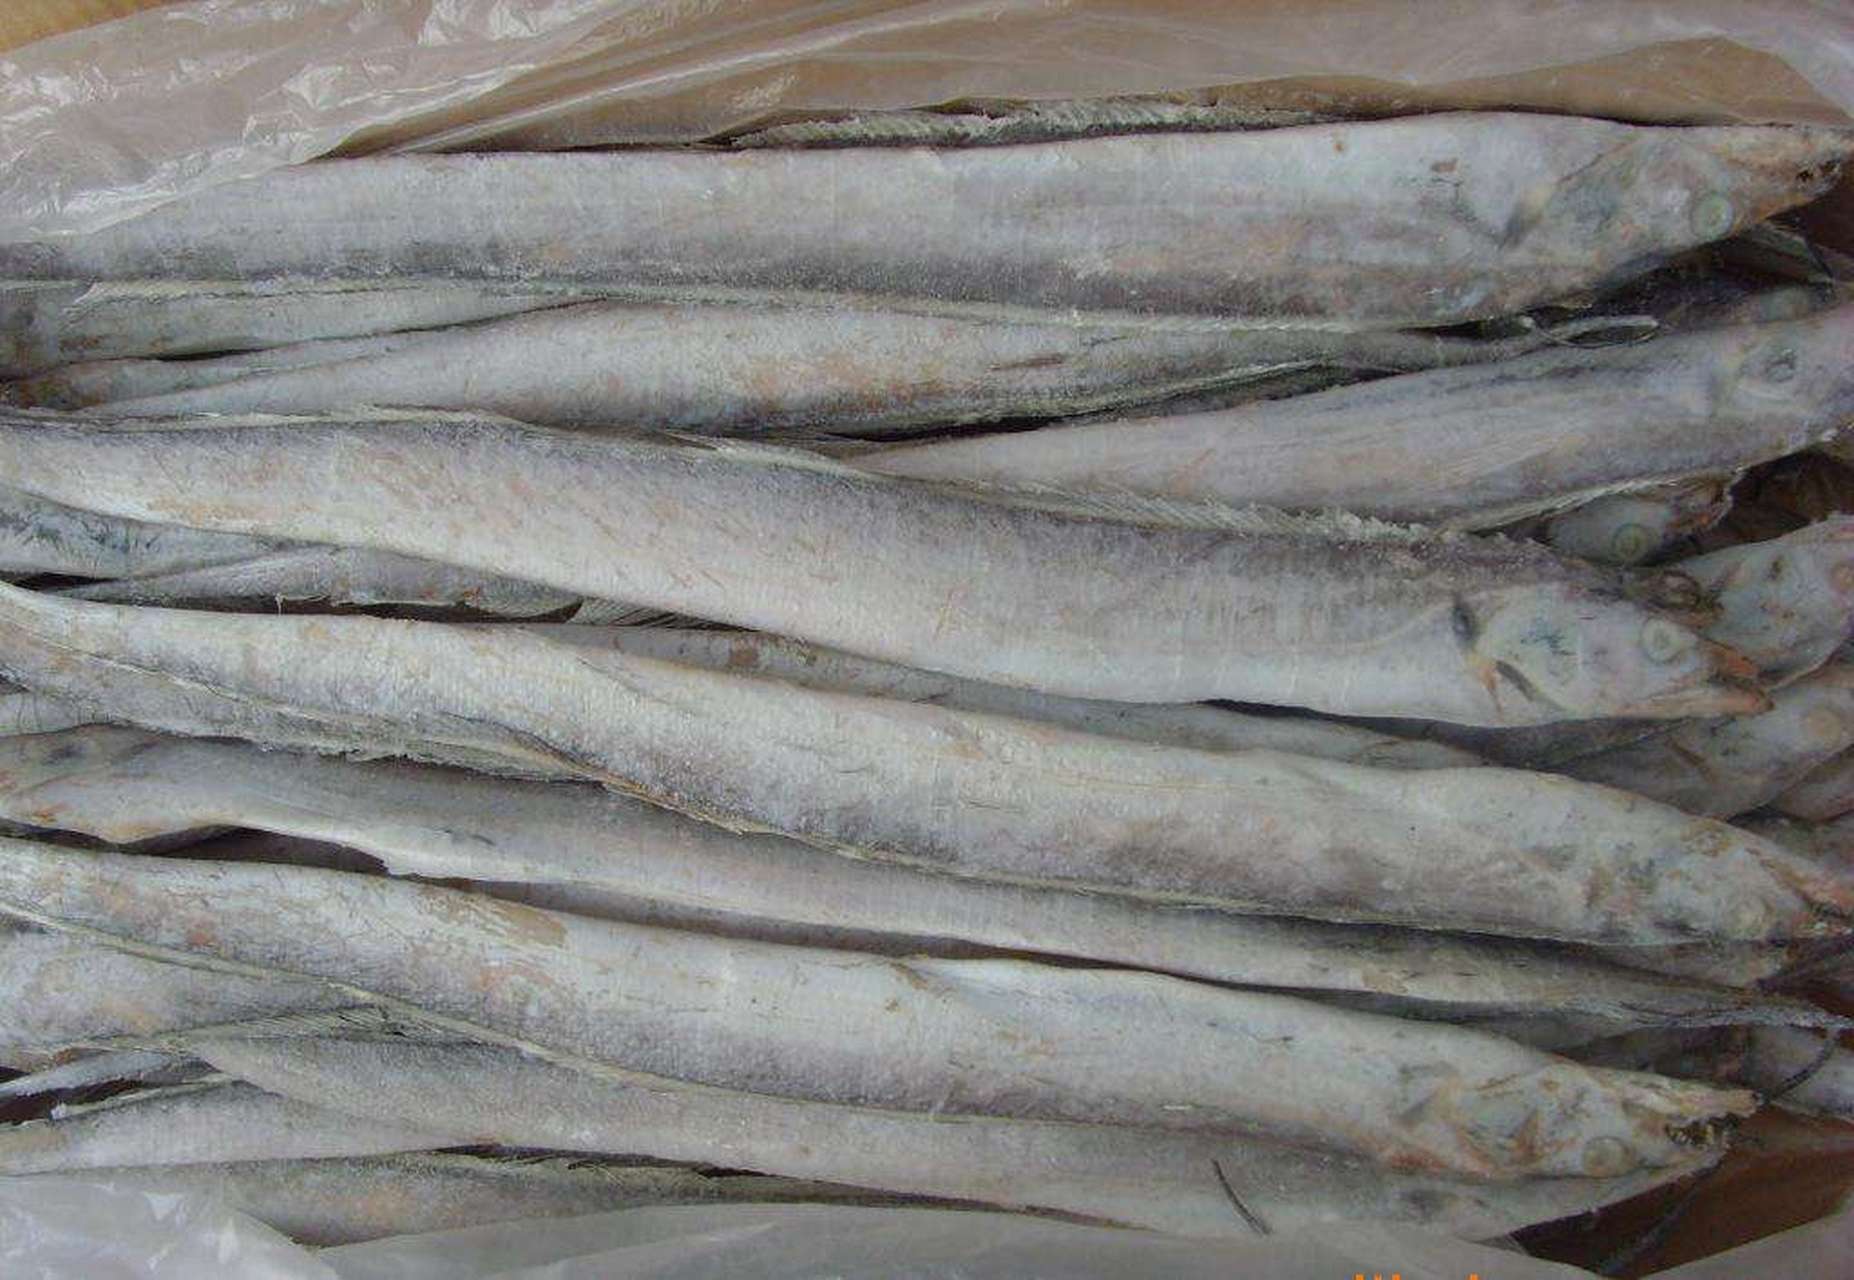 印度尼西亚进口的1批冻带鱼1个外包装样本上也检出了新冠病毒核酸阳性